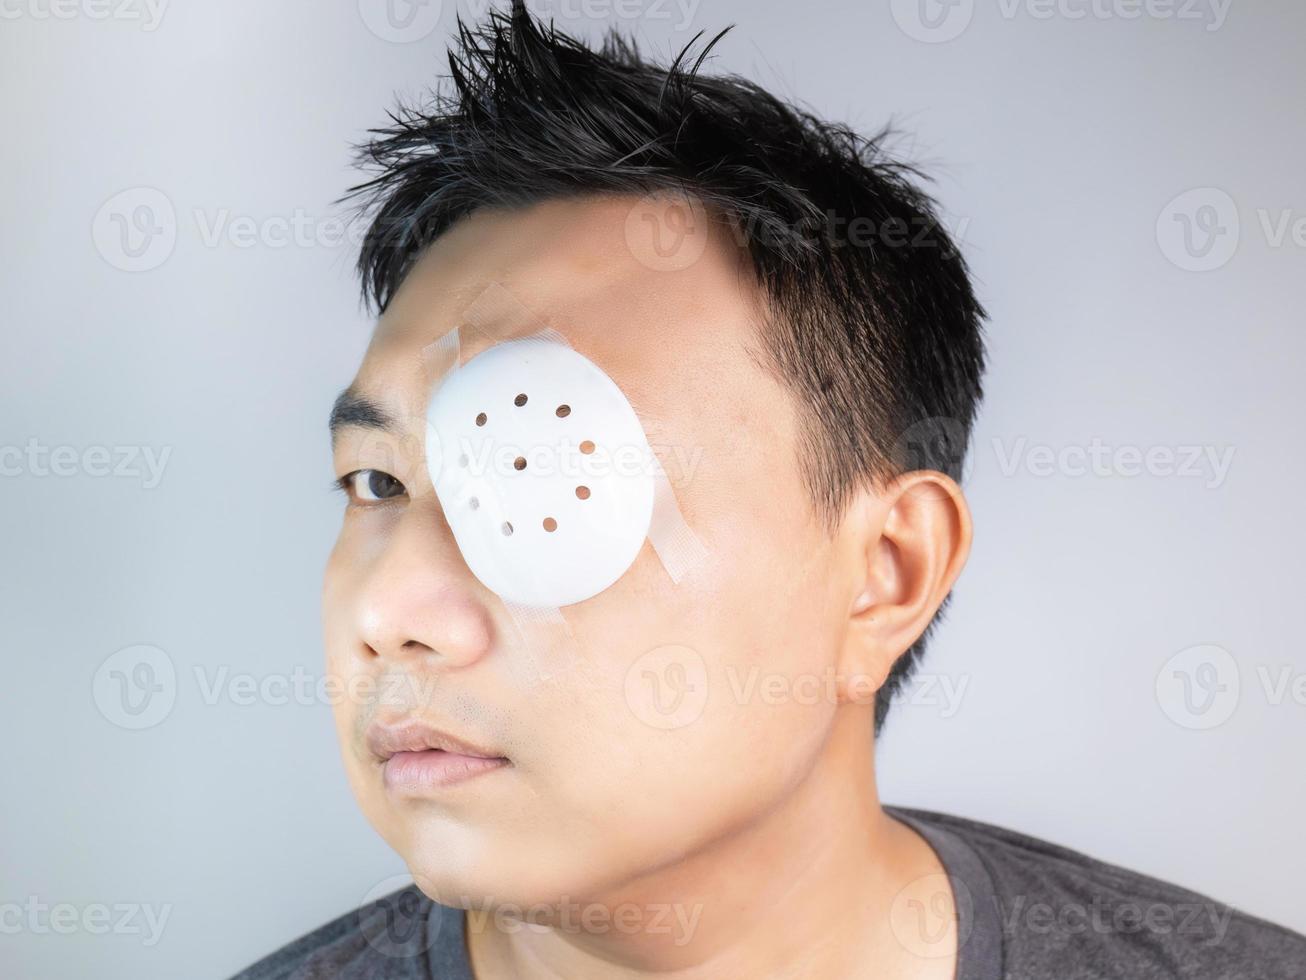 los hombres asiáticos usan máscaras para los ojos, protección solar, máscaras contra el polvo, máscaras después del tratamiento o la cirugía, lo que reduce la visión incluso con agujeros pequeños. almacenar en un lugar fresco y seco lejos de la luz solar directa. foto